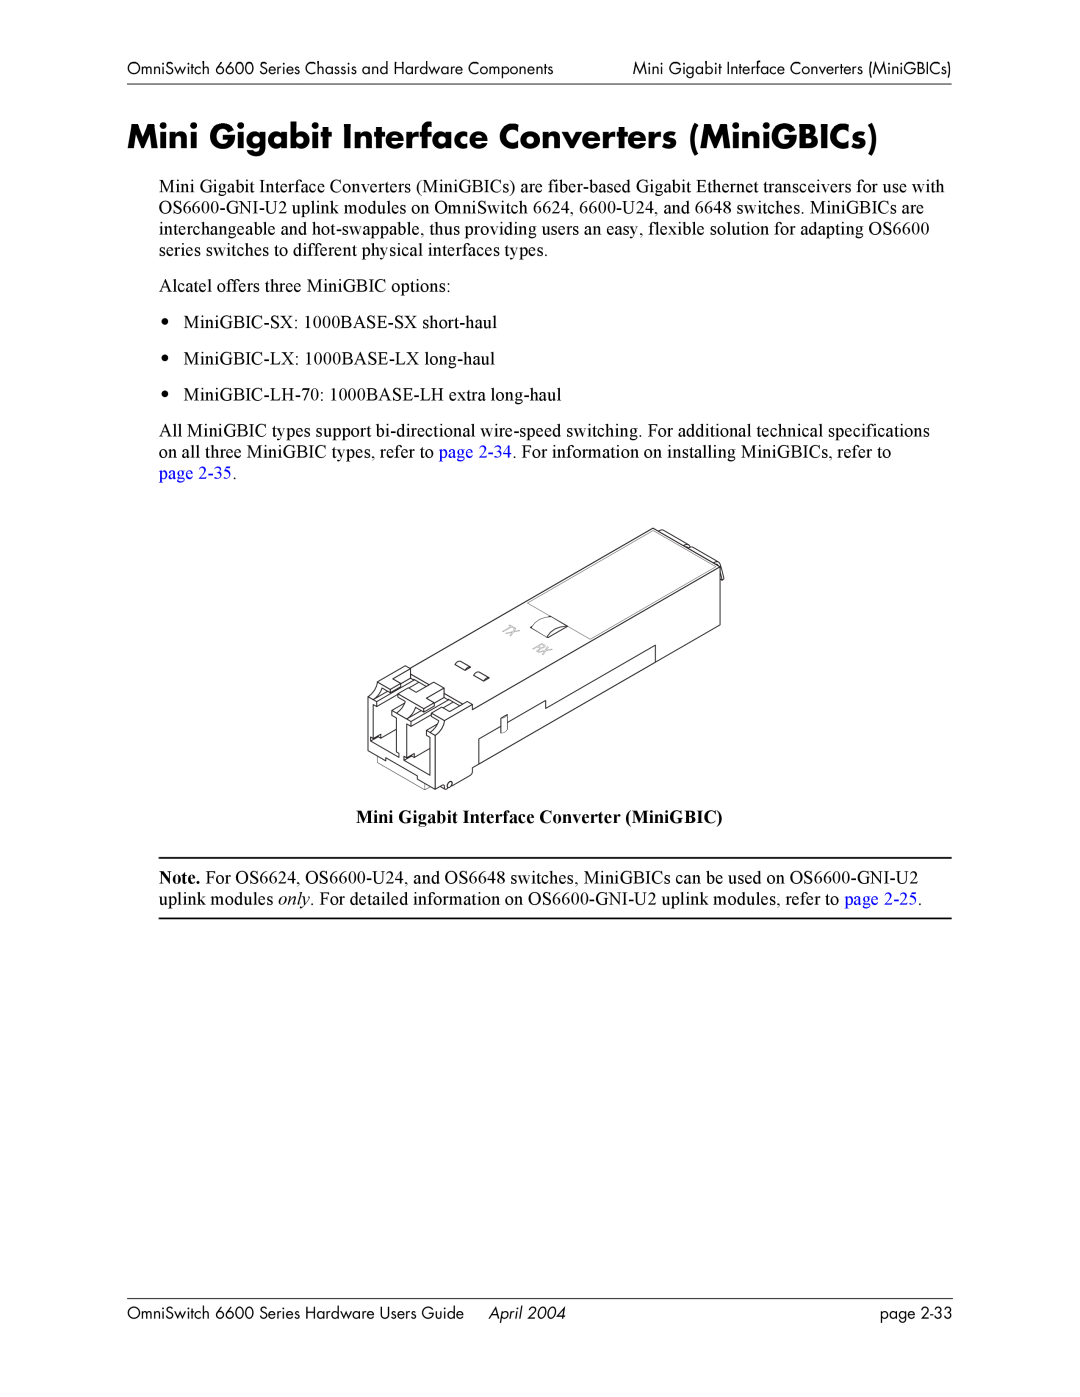 Alcatel-Lucent 6600 Series, 6648 Mini Gigabit Interface Converters MiniGBICs, Mini Gigabit Interface Converter MiniGBIC 